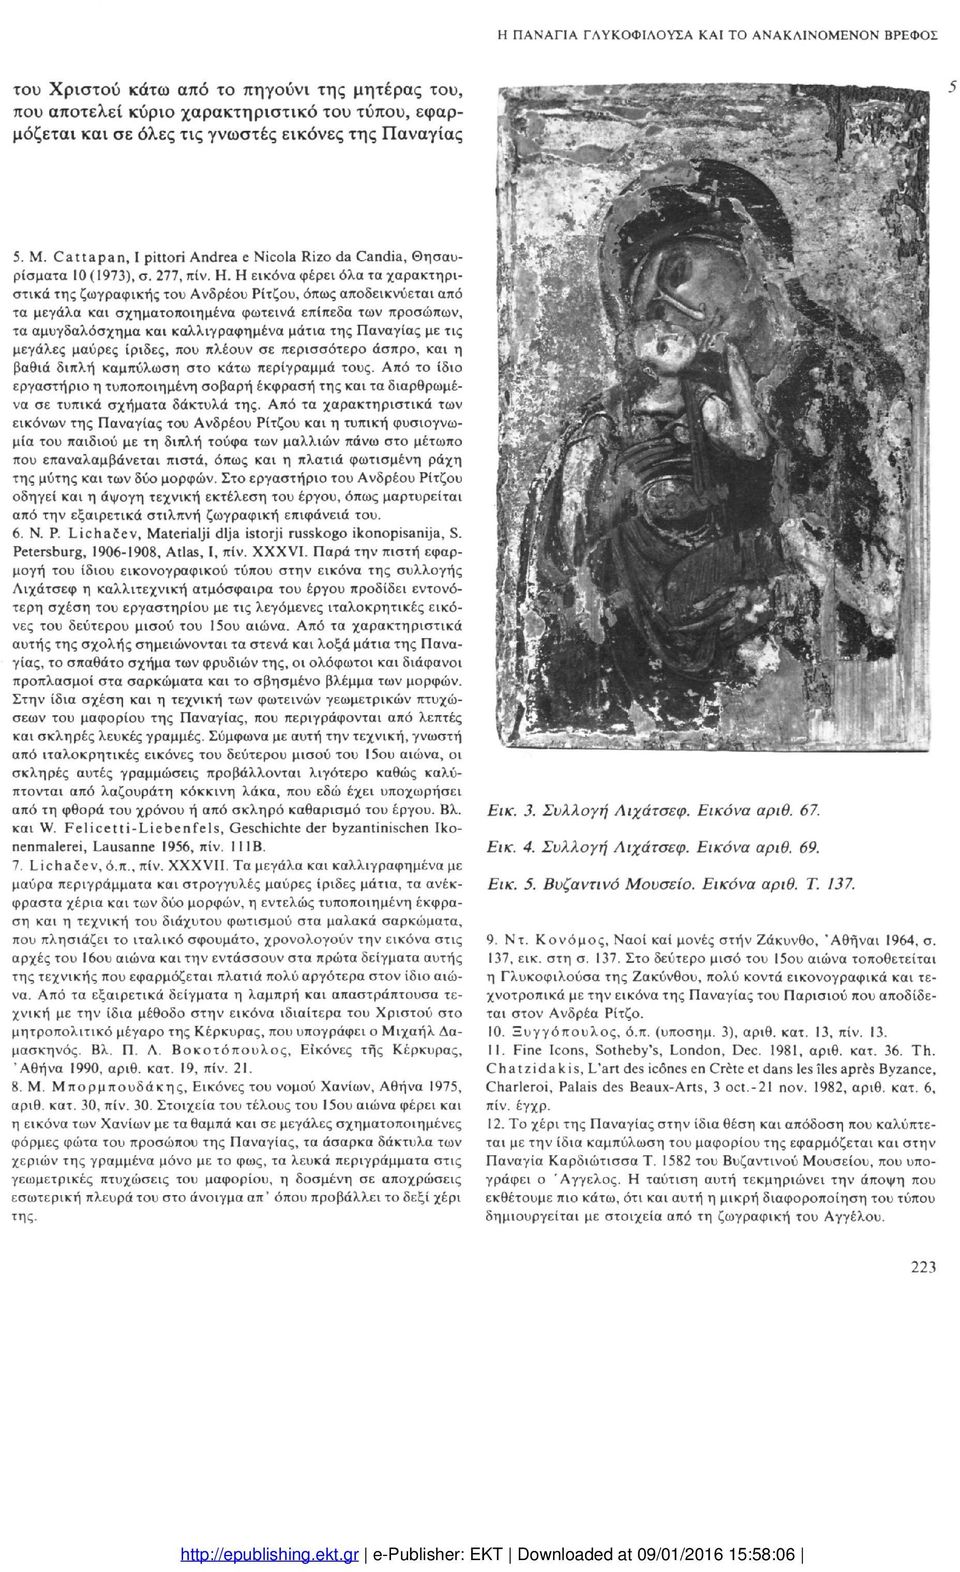 Η εικόνα φέρει όλα τα χαρακτηρι στικά της ζωγραφικής του Ανδρέου Ρίτζου, όπως αποδεικνύεται από τα μεγάλα και σχηματοποιημένα φωτεινά επίπεδα των προσώπων, τα αμυγδαλόσχημα και καλλιγραφημένα μάτια